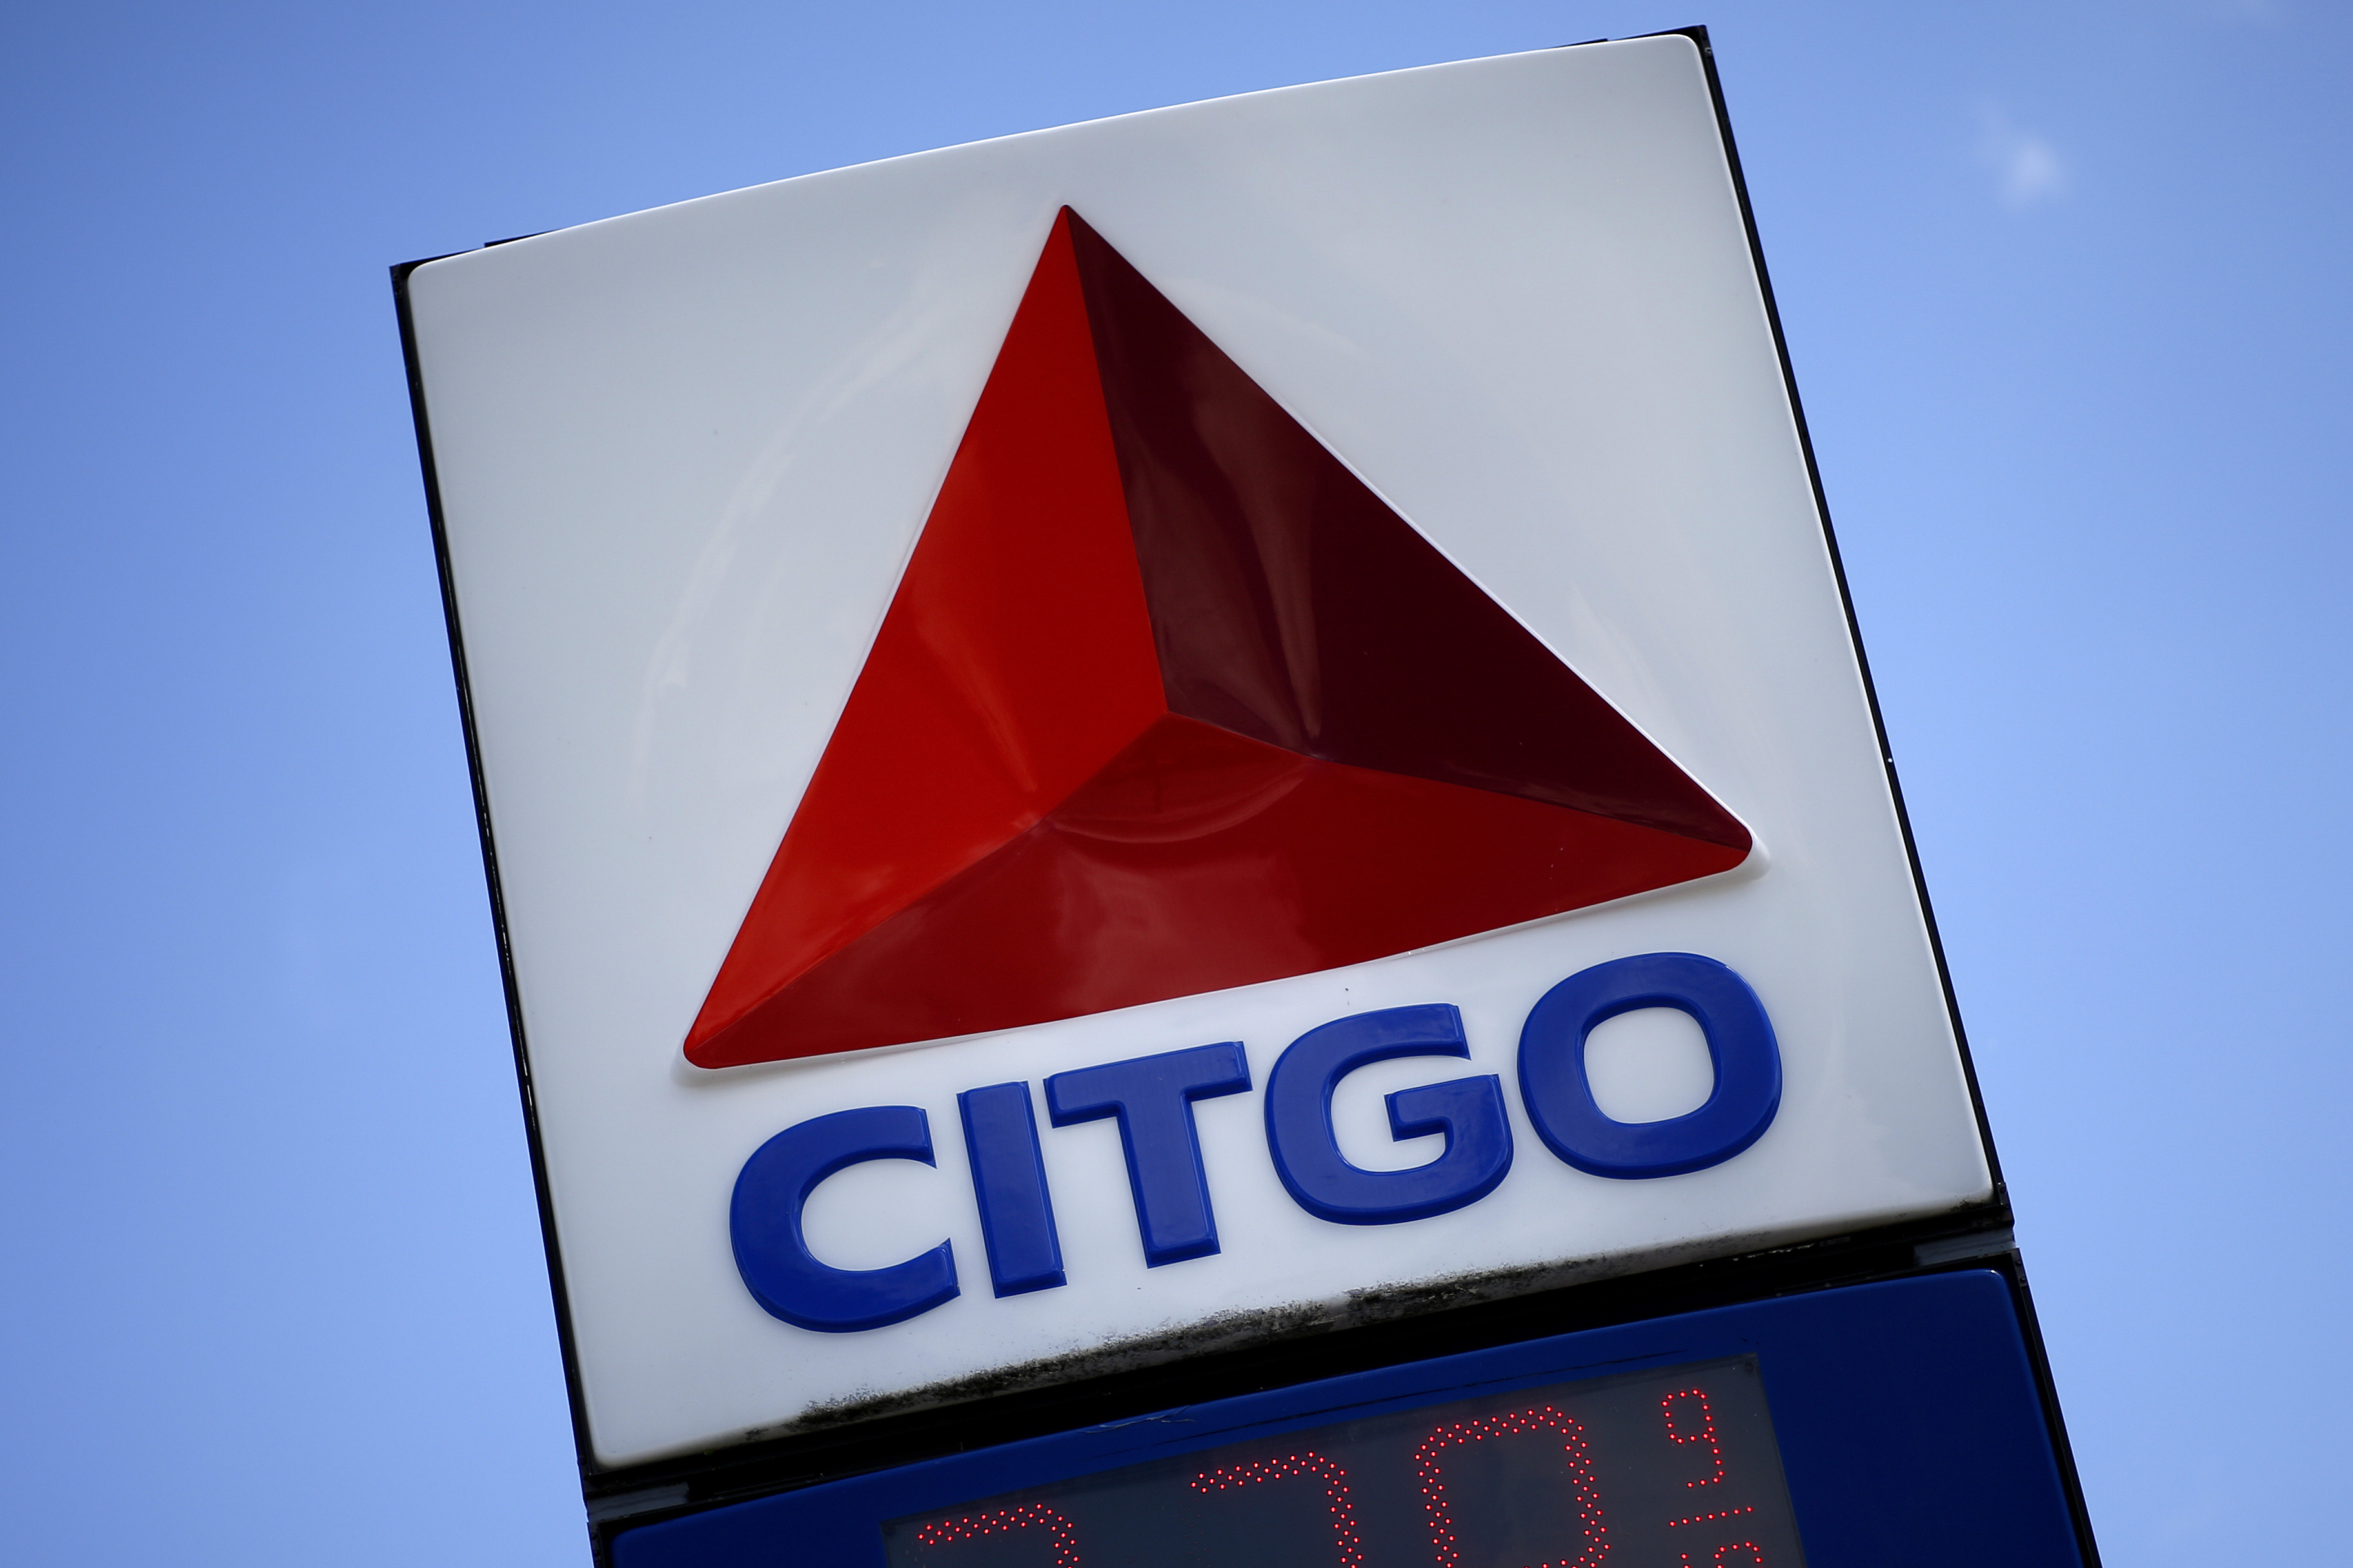 Citgo registró ganancias en sus resultados del segundo trimestre de 2021